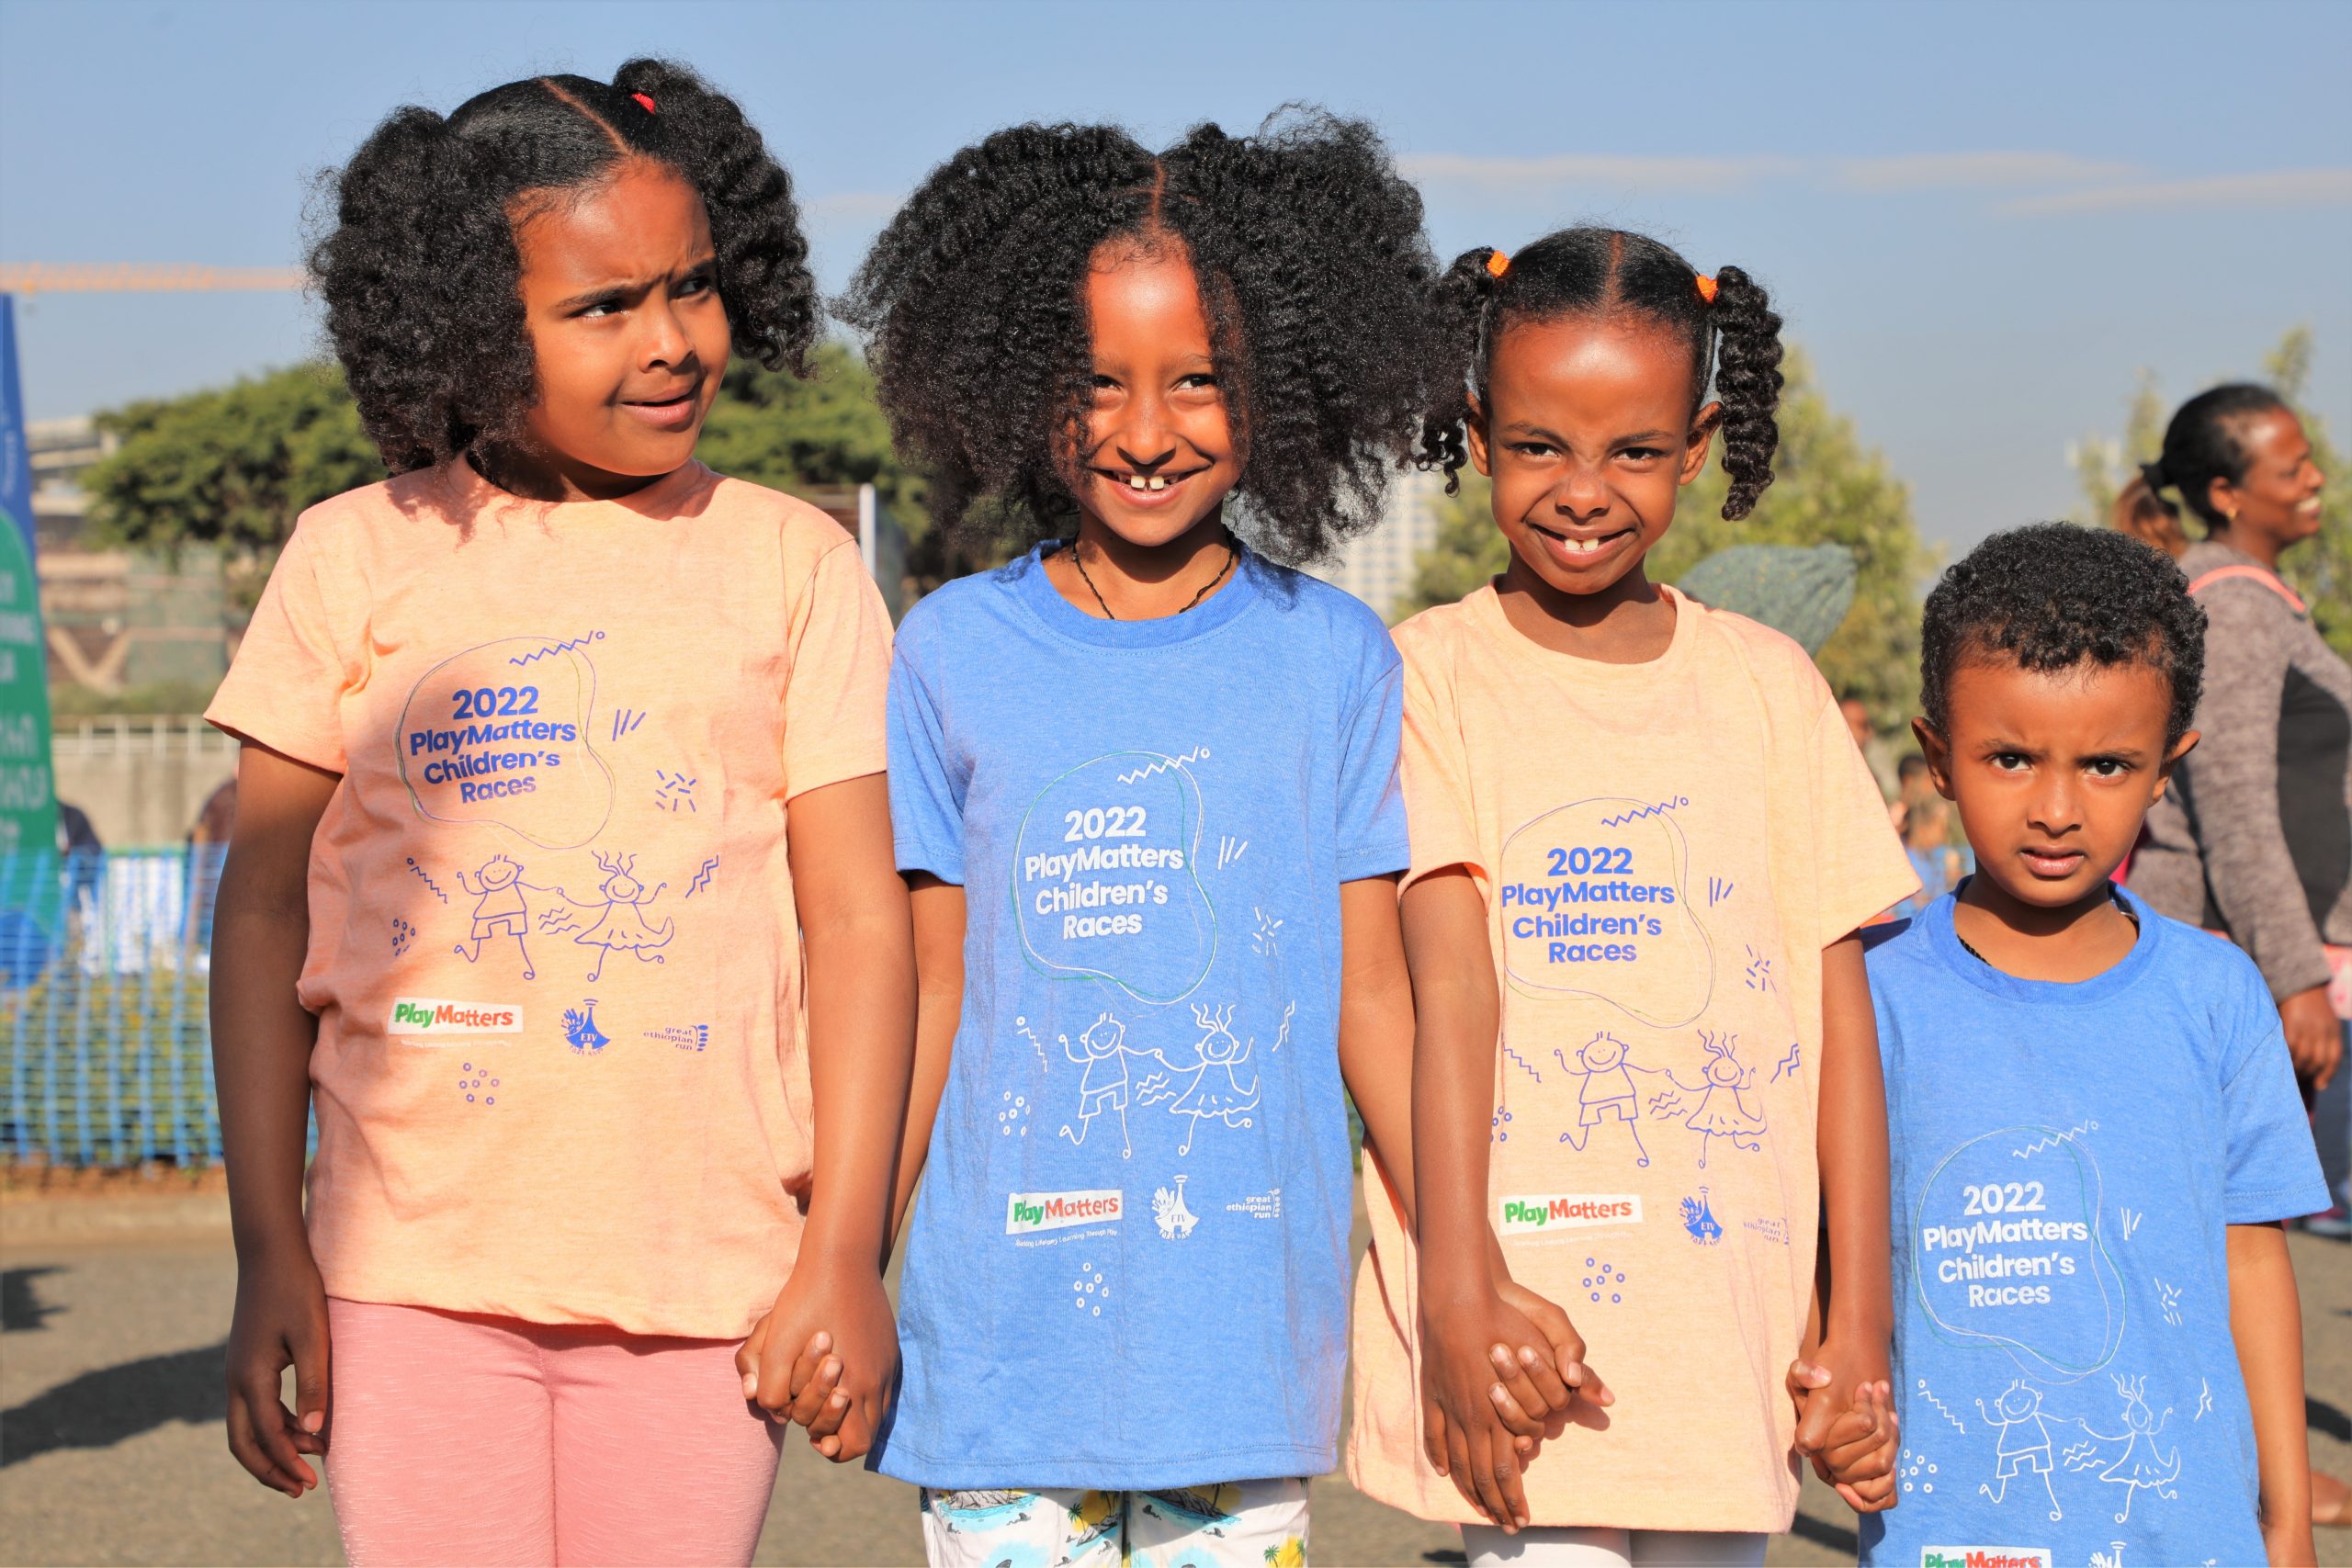 Børneløb satte uddannelse og leg på dagsordenen i Etiopien